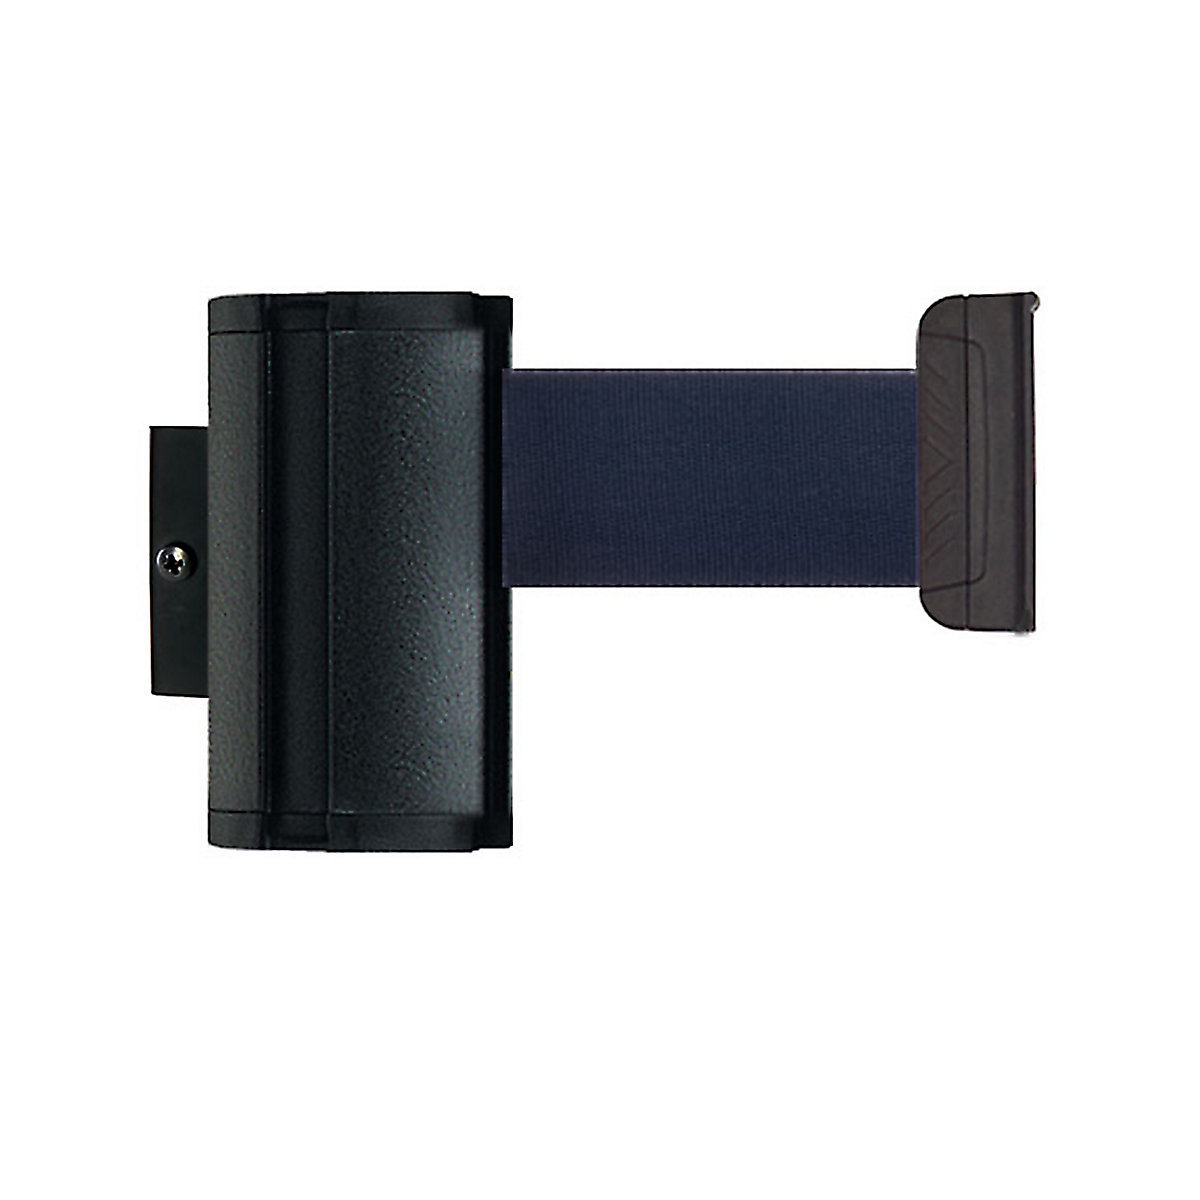 Cassete de cinta Wall Mount, extração máx. da cinta 3700 mm, cor da cinta azul escuro-5